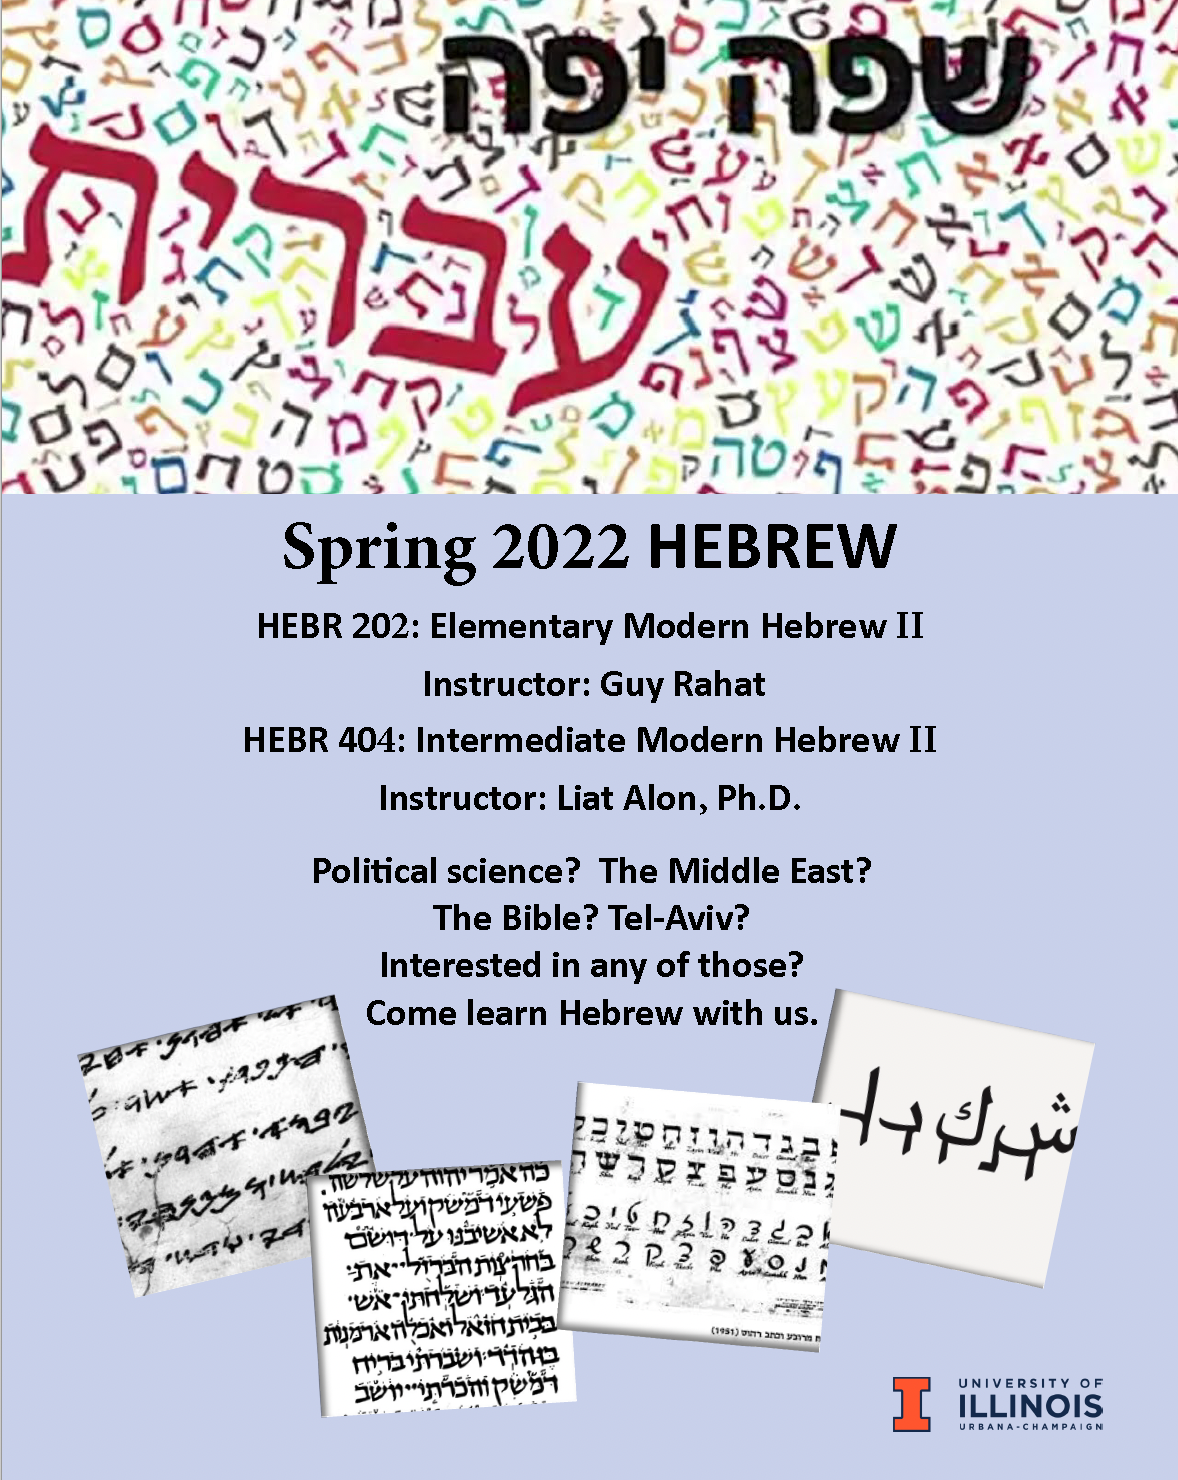 Hebrew flyer for Spring 2022